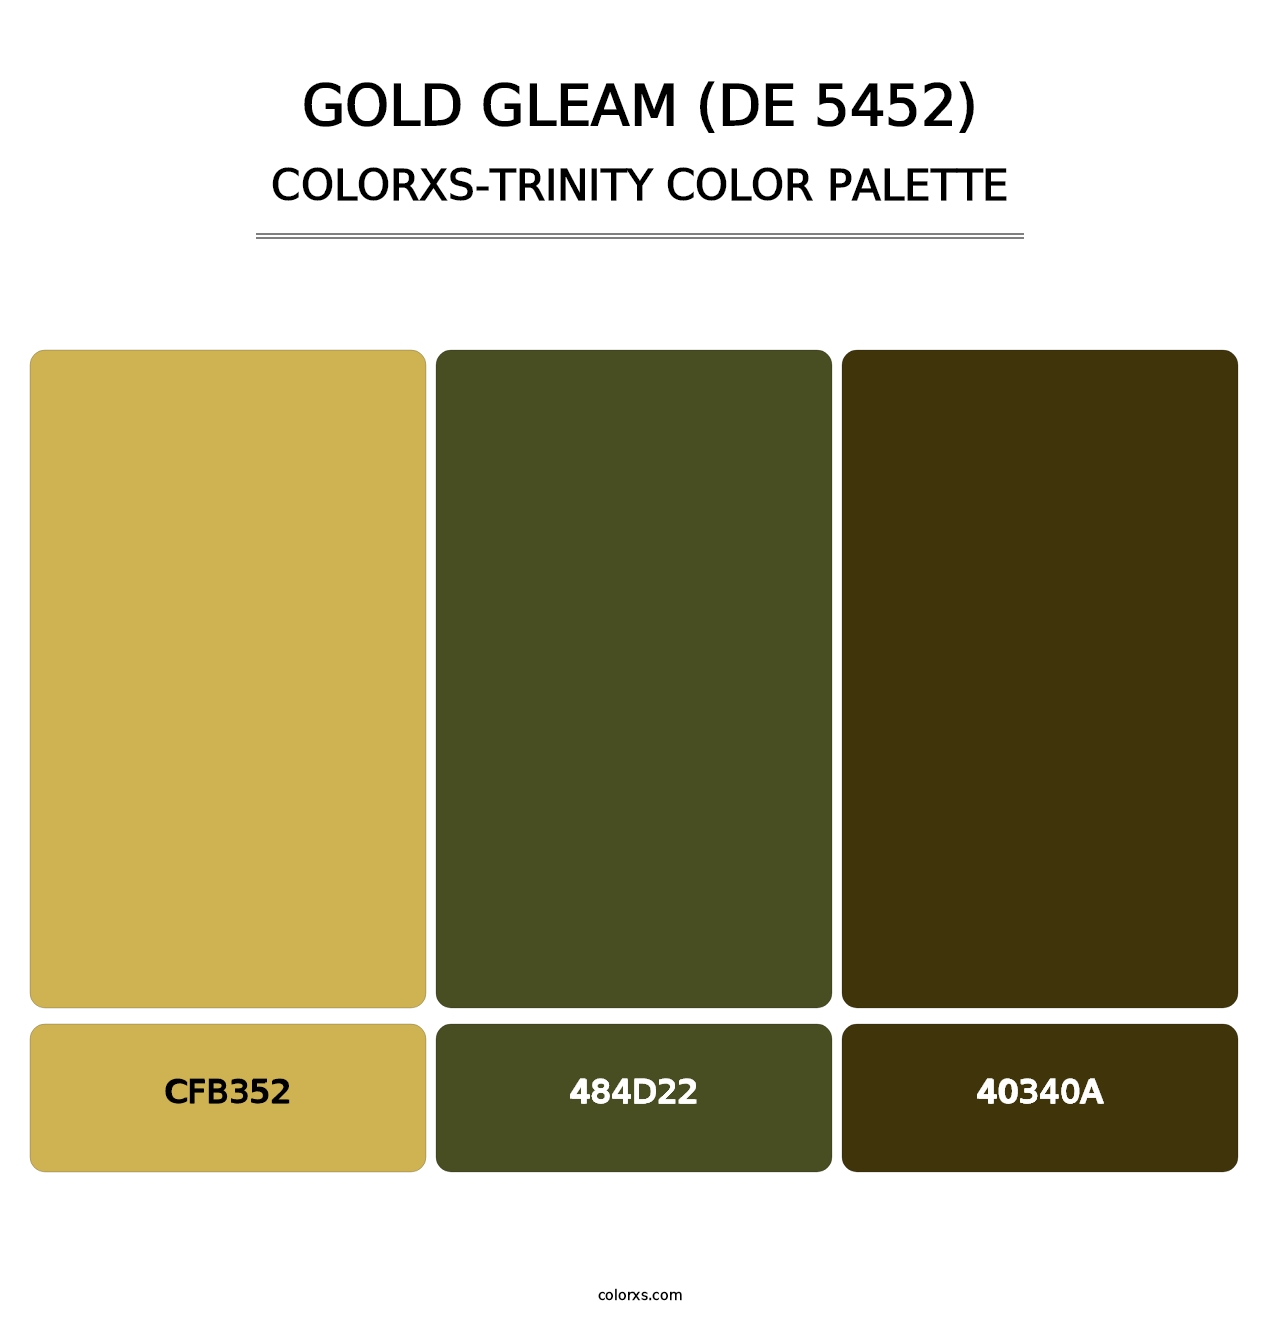 Gold Gleam (DE 5452) - Colorxs Trinity Palette